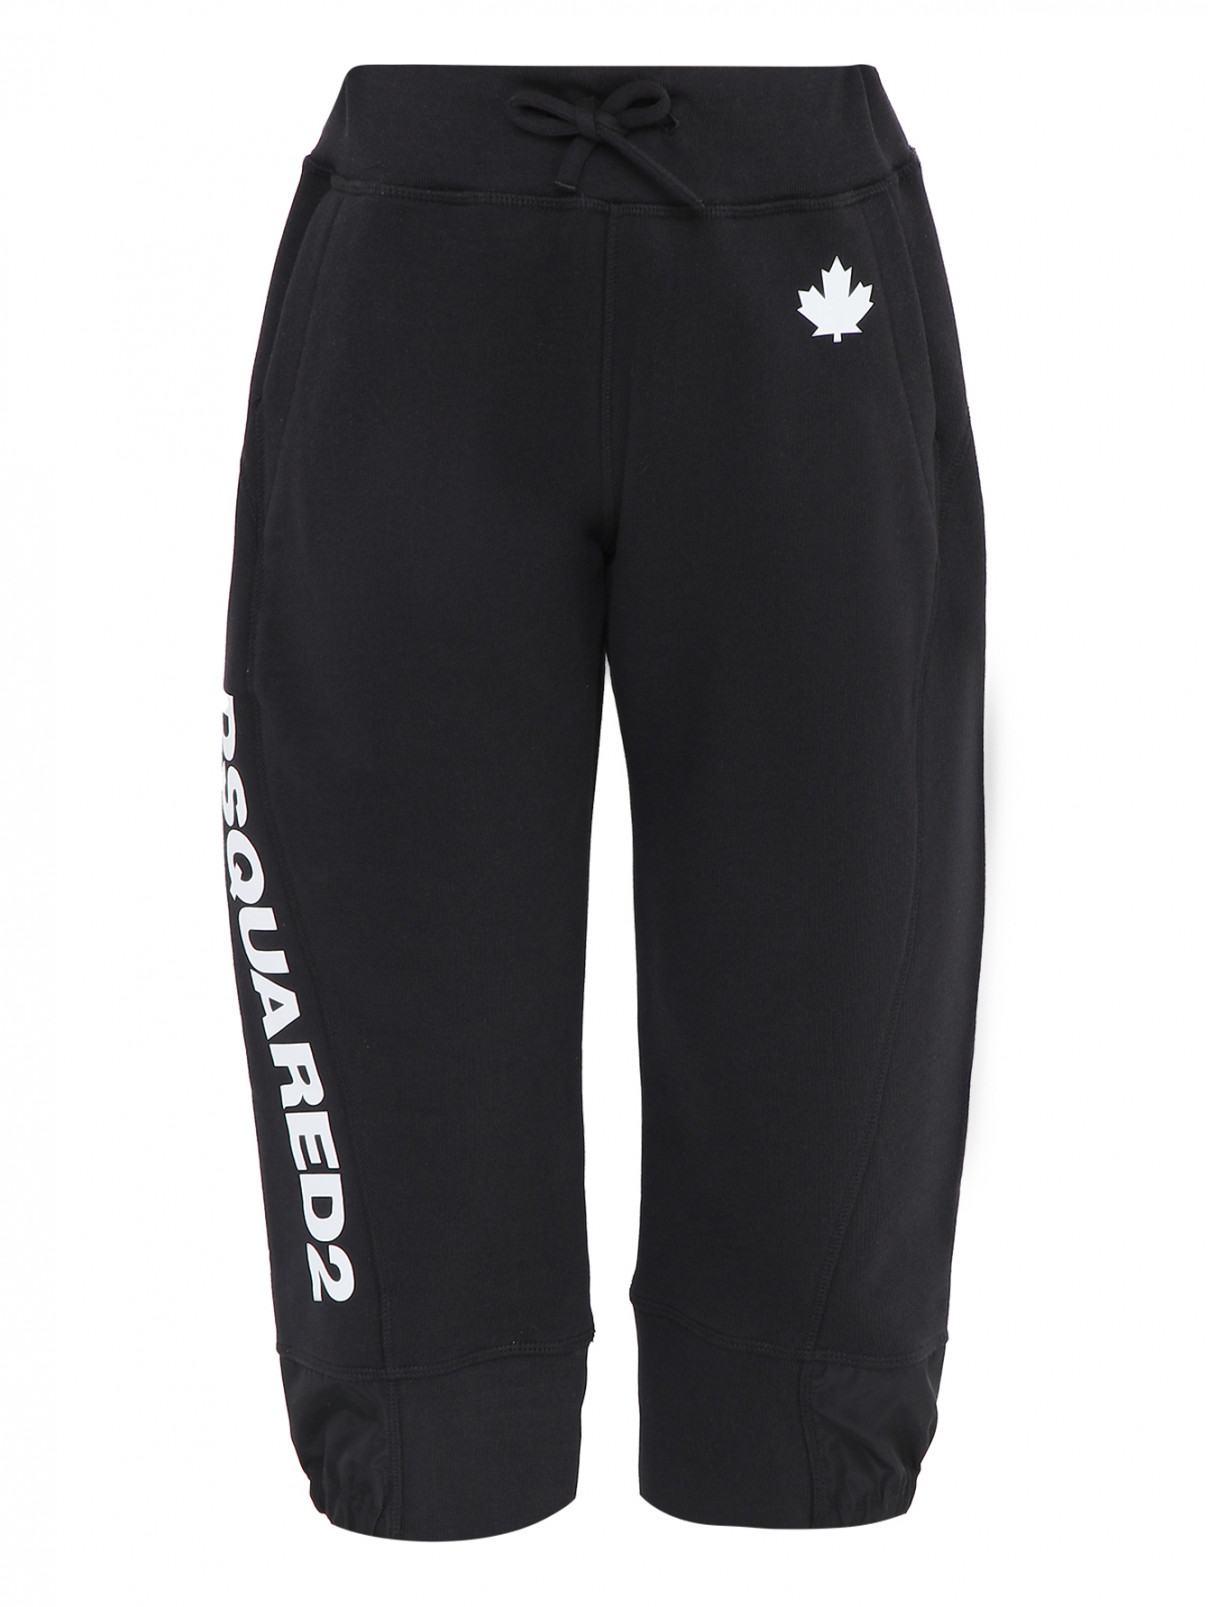 Трикотажные брюки с принтом Dsquared2  –  Общий вид  – Цвет:  Черный